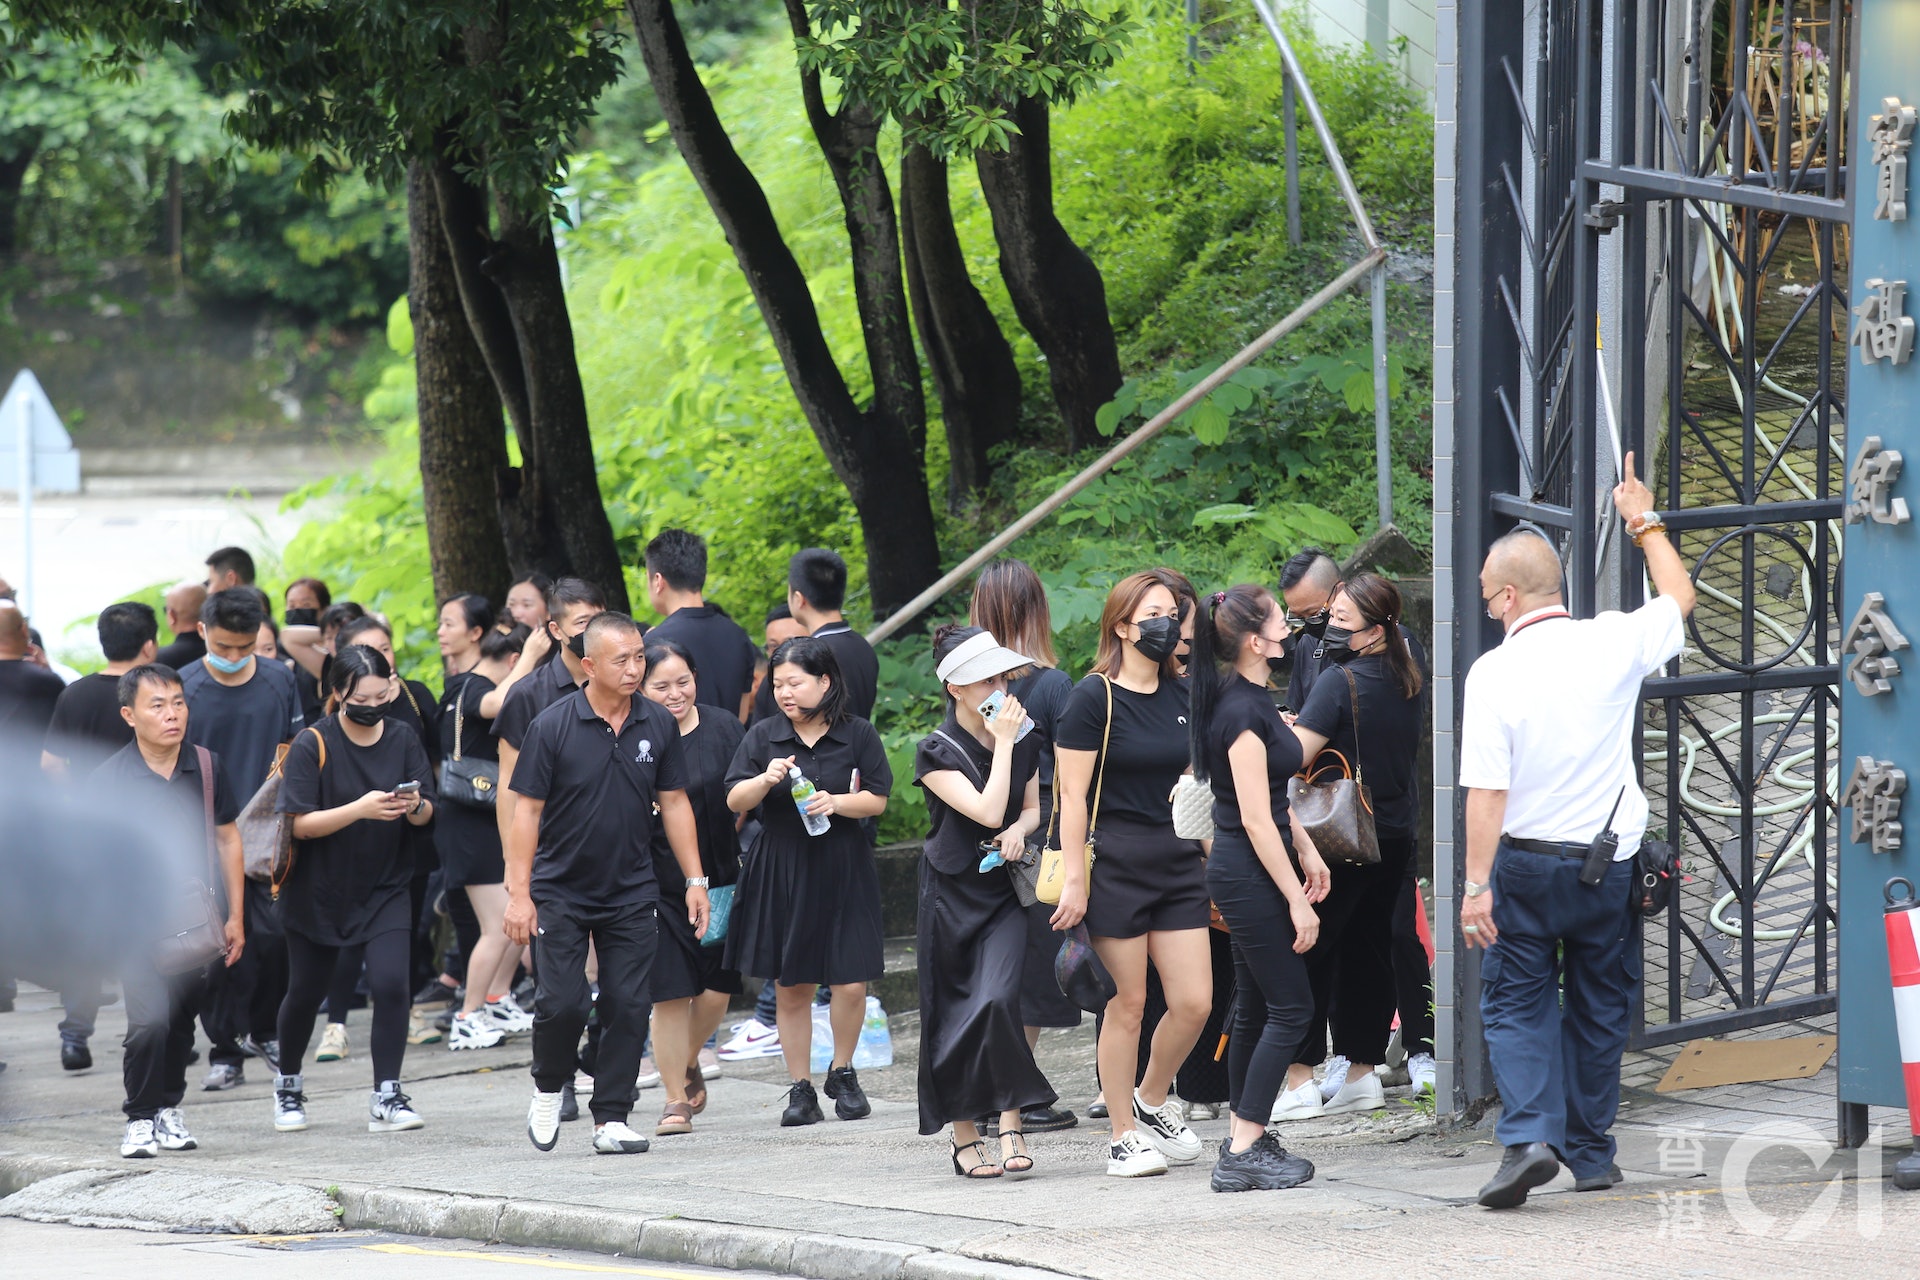 Đám đông xếp hàng dài đến viếng nữ người mẫu Hồng Kông bị giết hại, phân xác - Ảnh 9.